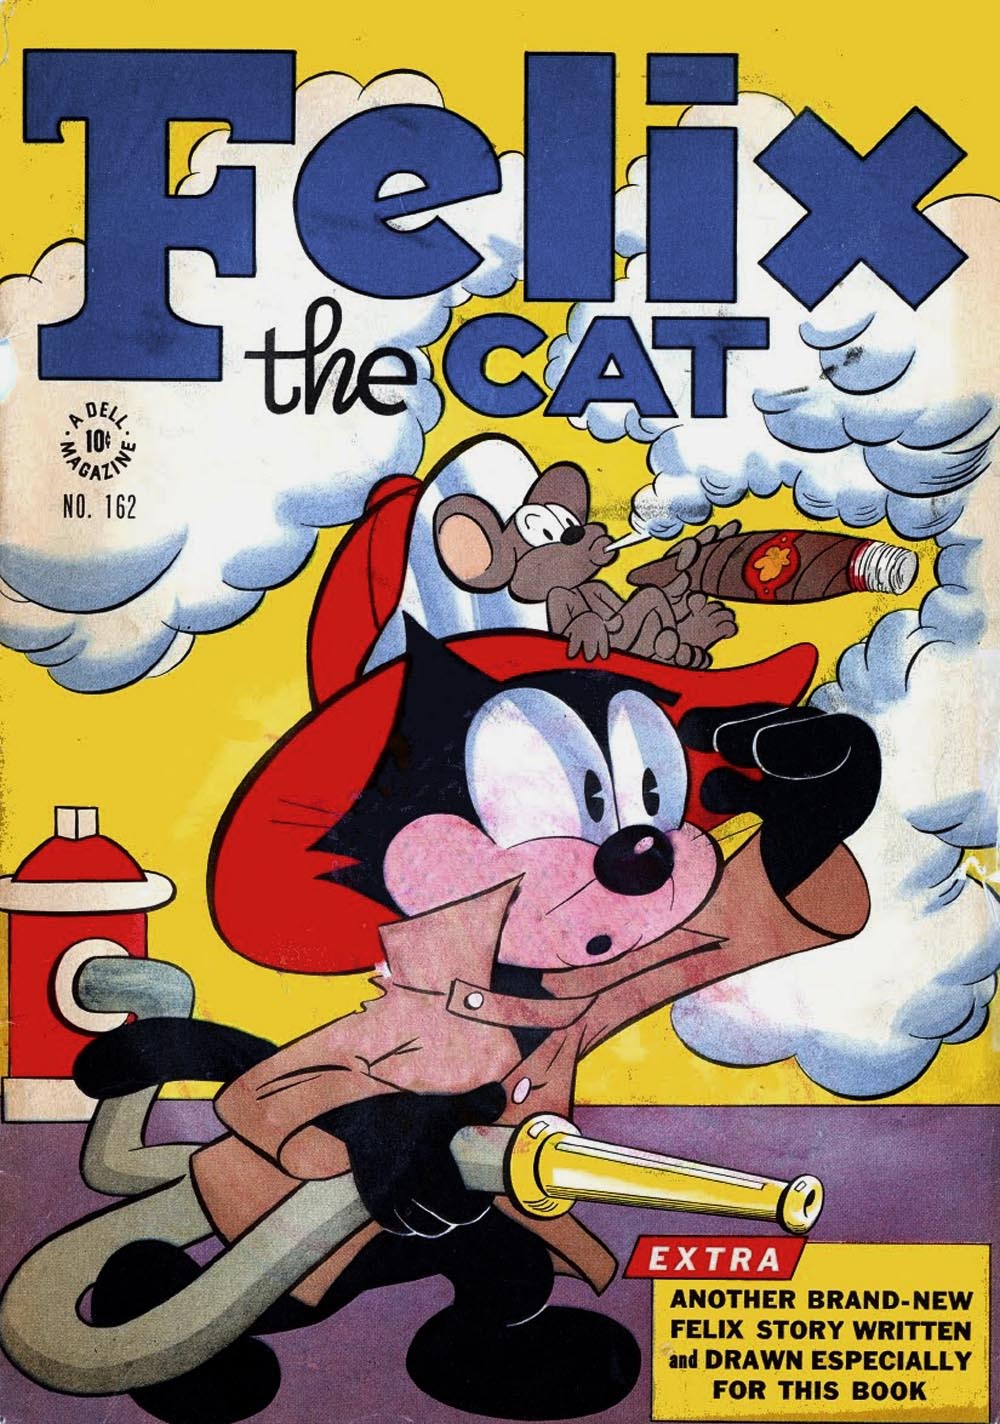 Inbetweens Felix the Cat Comic Book Covers